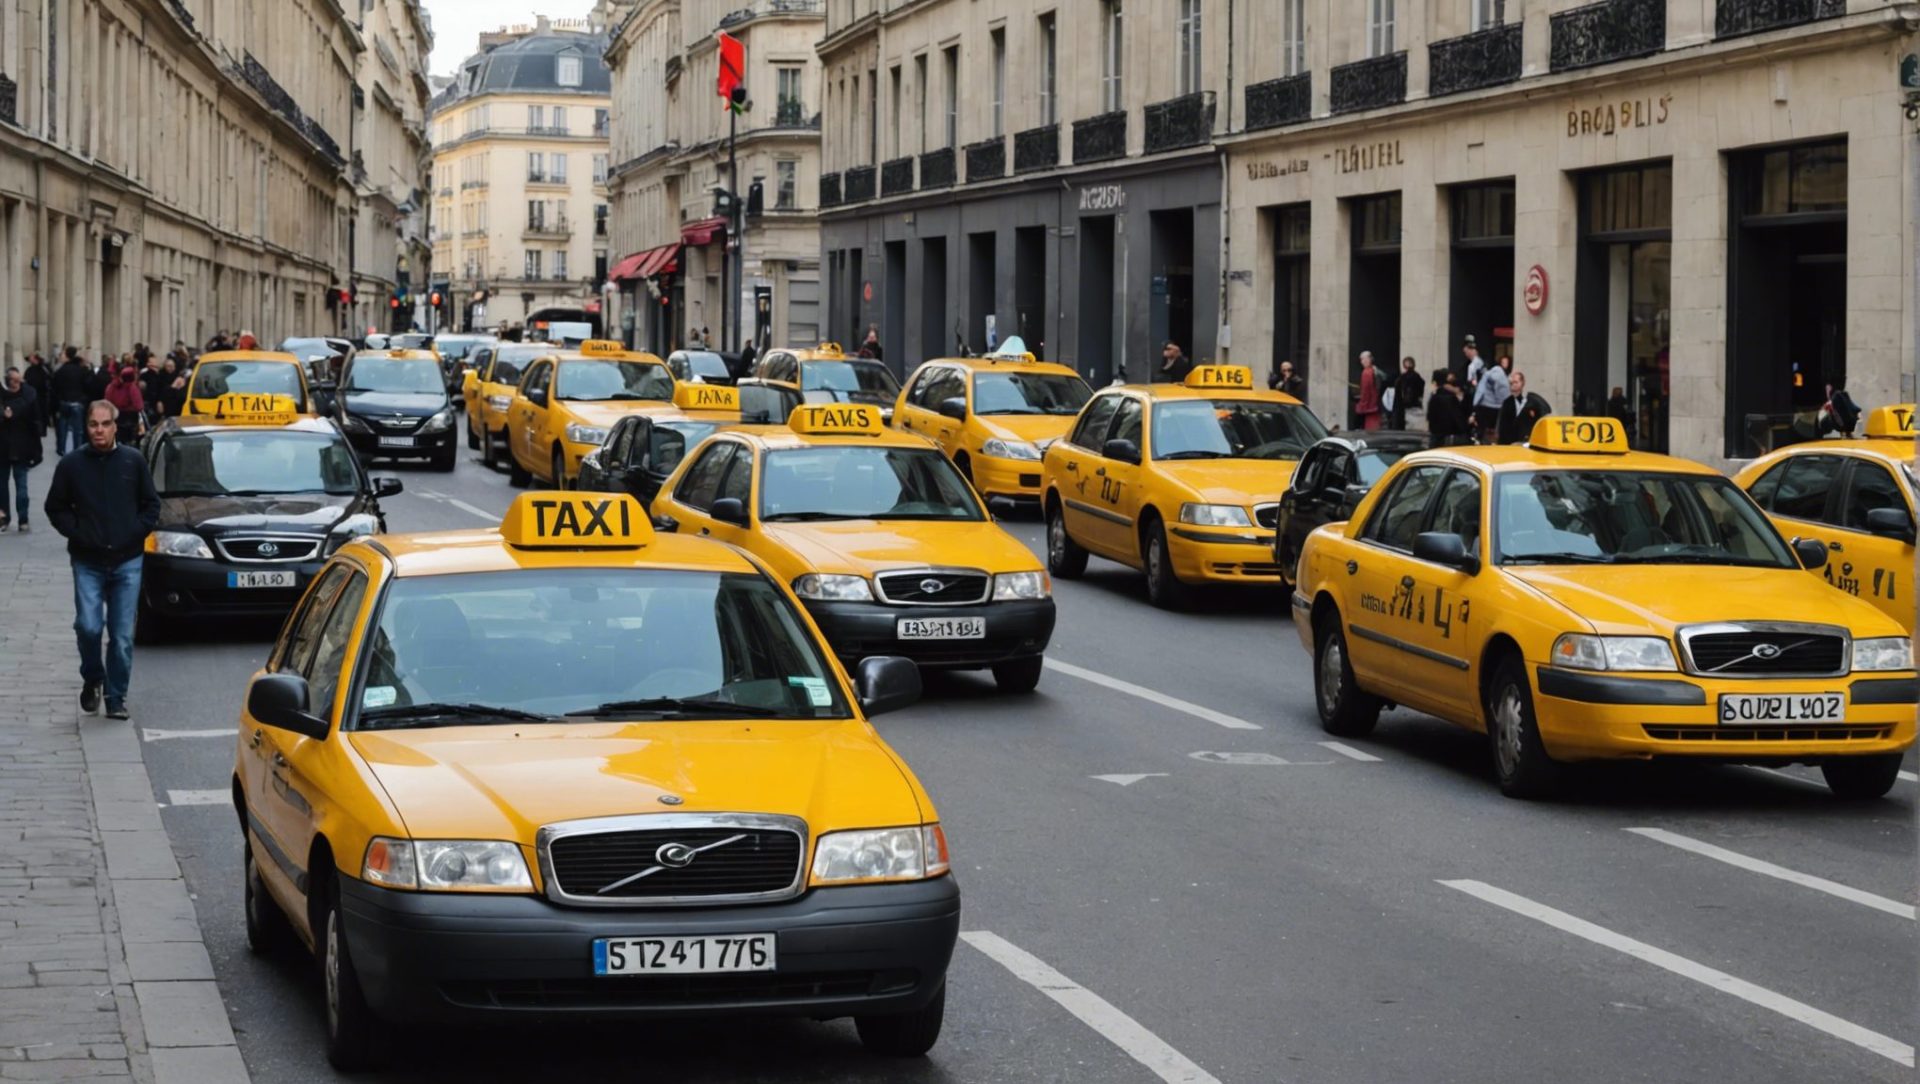 découvrez tout ce que vous devez savoir sur l'équipement obligatoire pour les taxis et les règles à respecter. informations essentielles pour les conducteurs et les propriétaires de taxis.